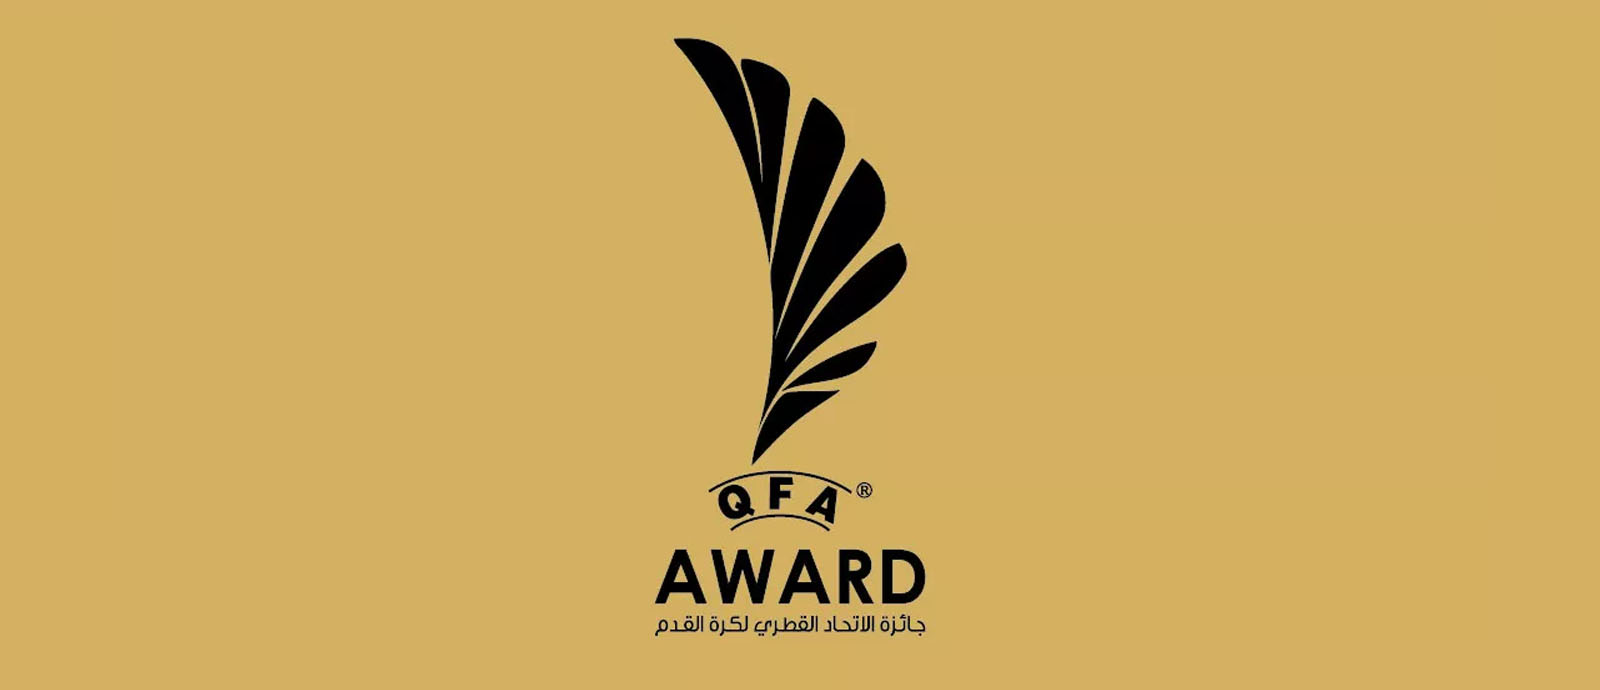 QFA Award for 2020-21 season